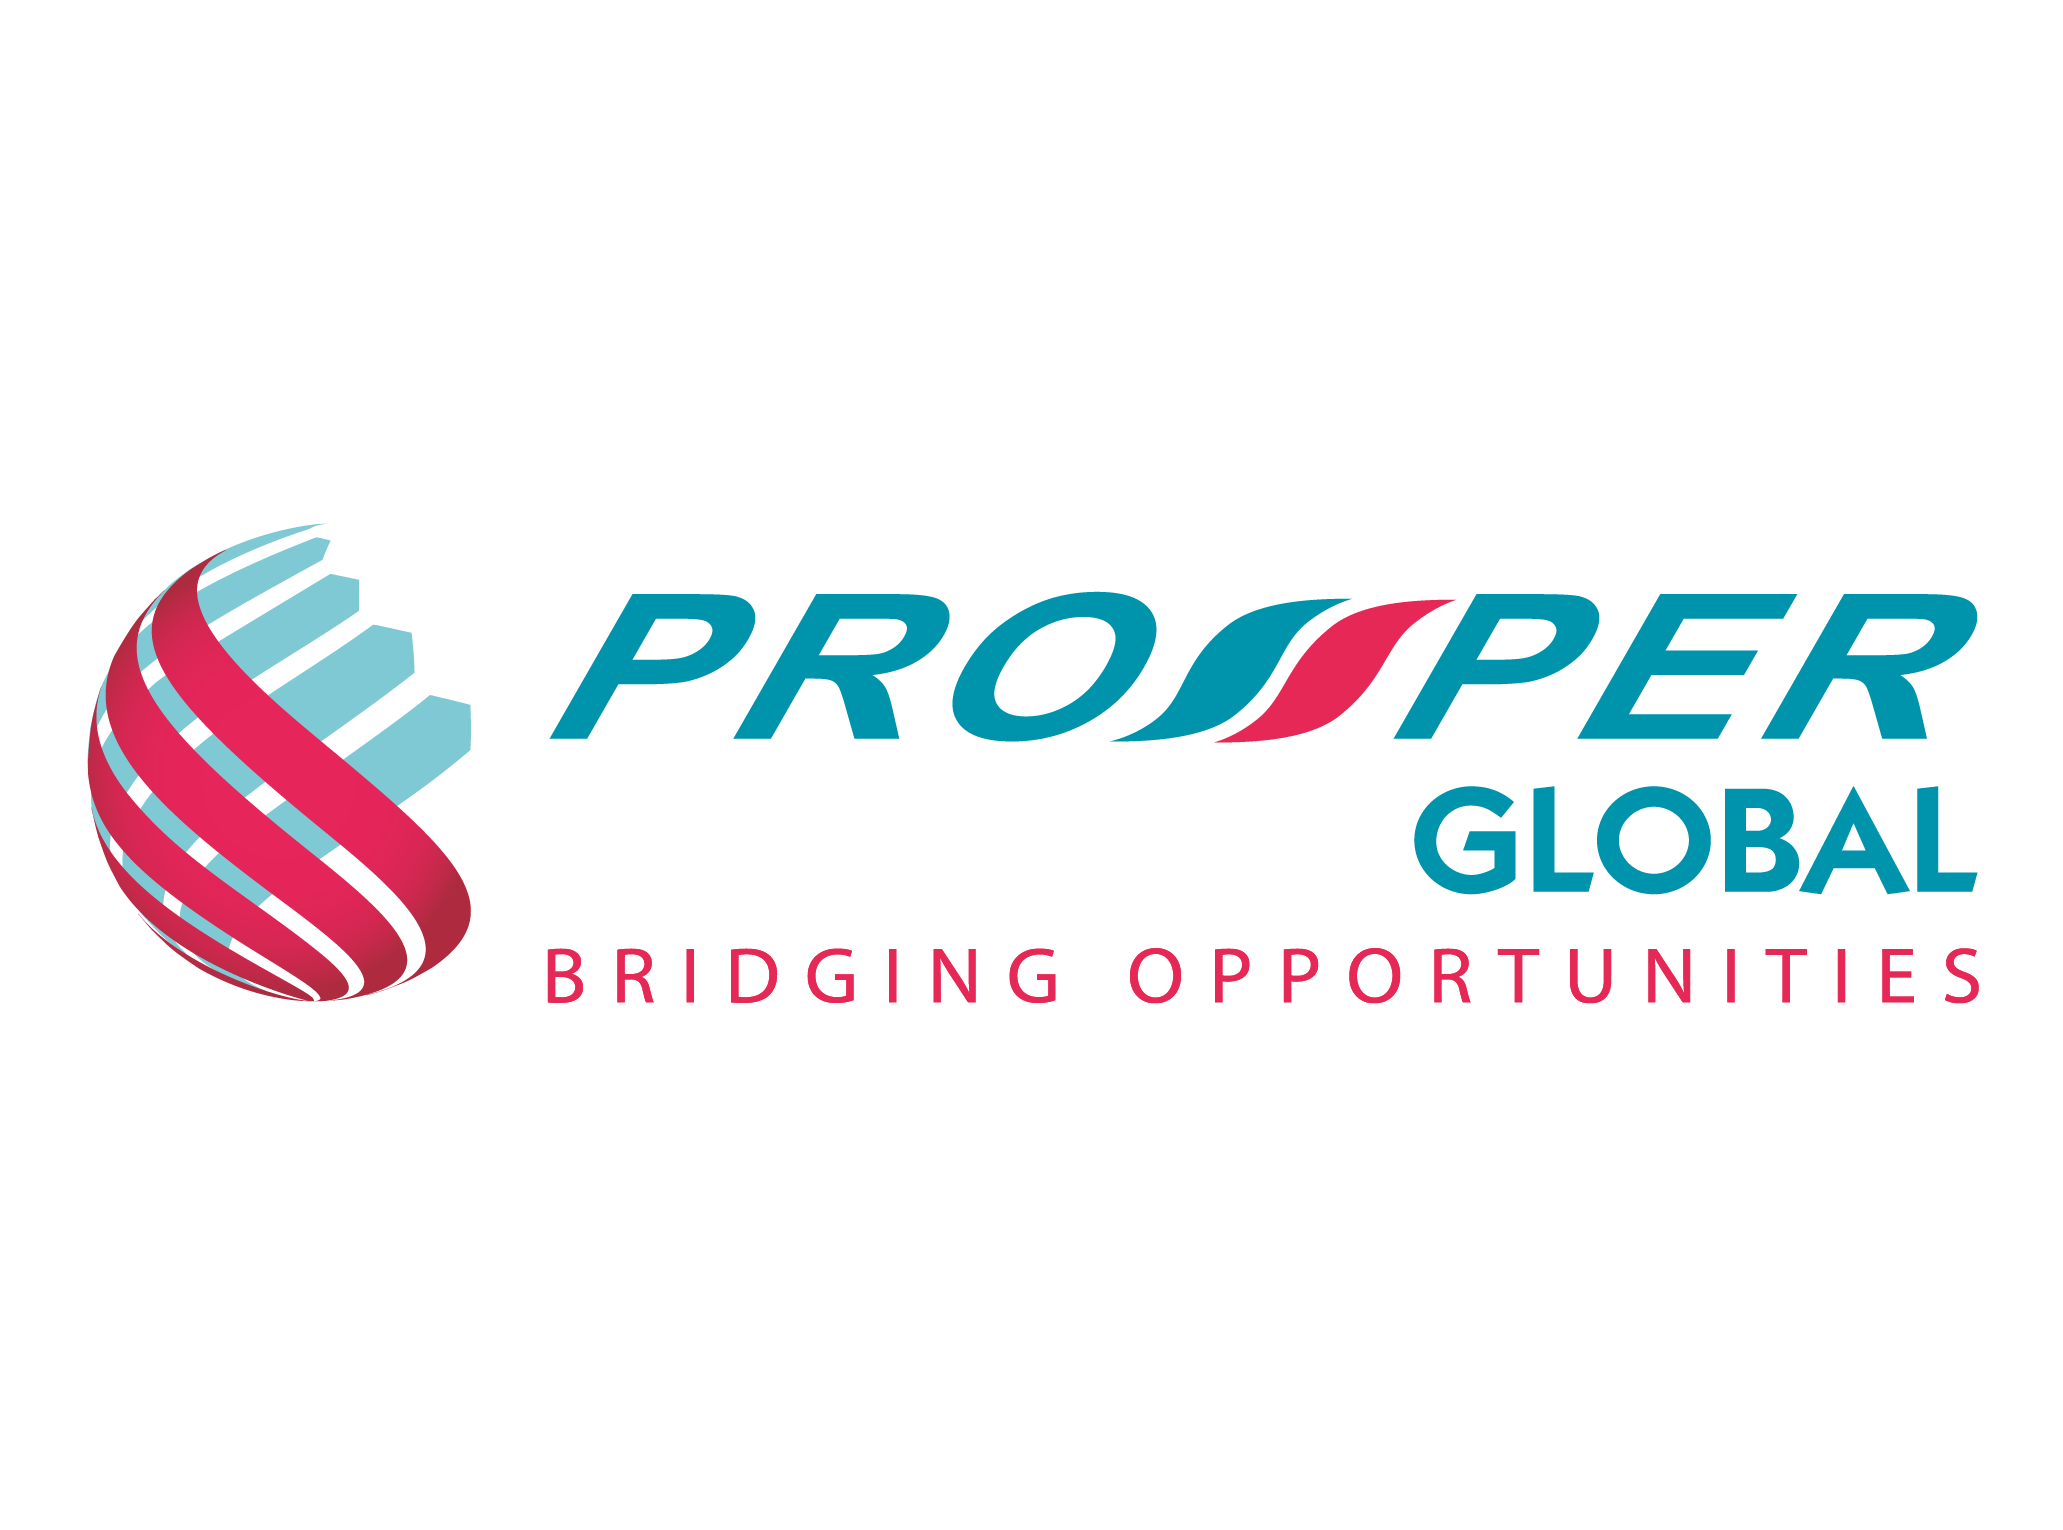 PROSPER Global - Sebuah inisiatif dalam membantu mempertingkat dan menaik taraf perniagaan bumiputera agar lebih kompetitif.